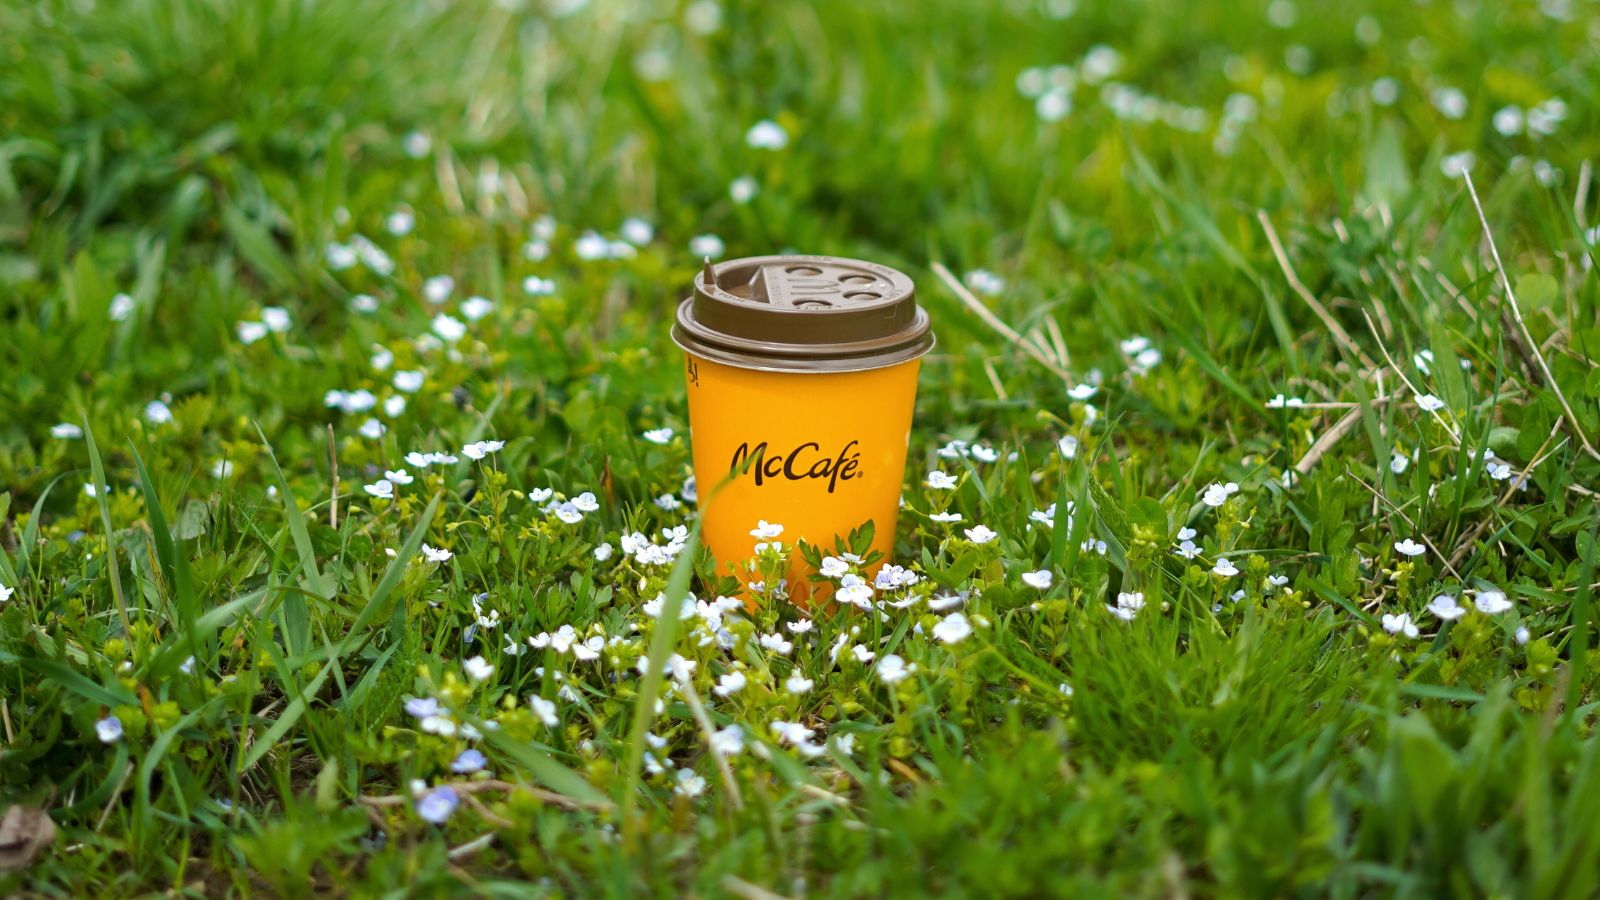 cafe nổi tiếng thế giới, hình ảnh ly cà phê mccafe trên nền cỏ xanh và hoa trắng